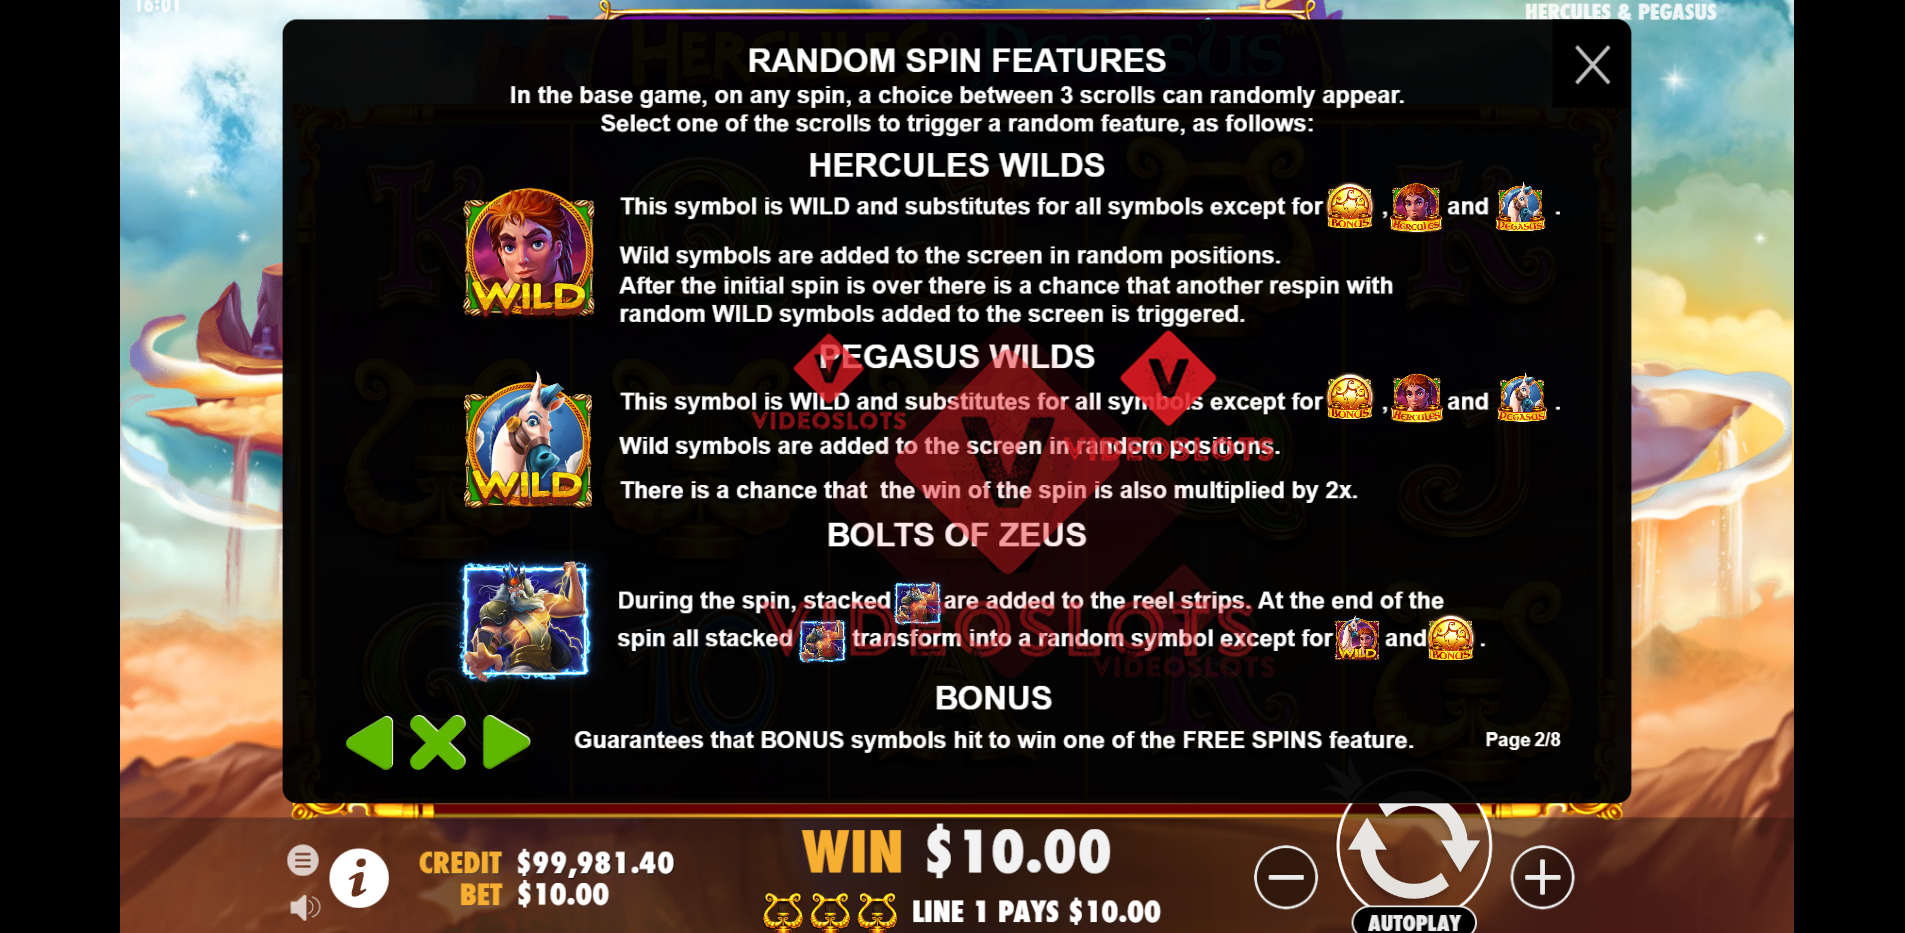 Game Rules for Hercules and Pegasus slot by Pragmatic Play